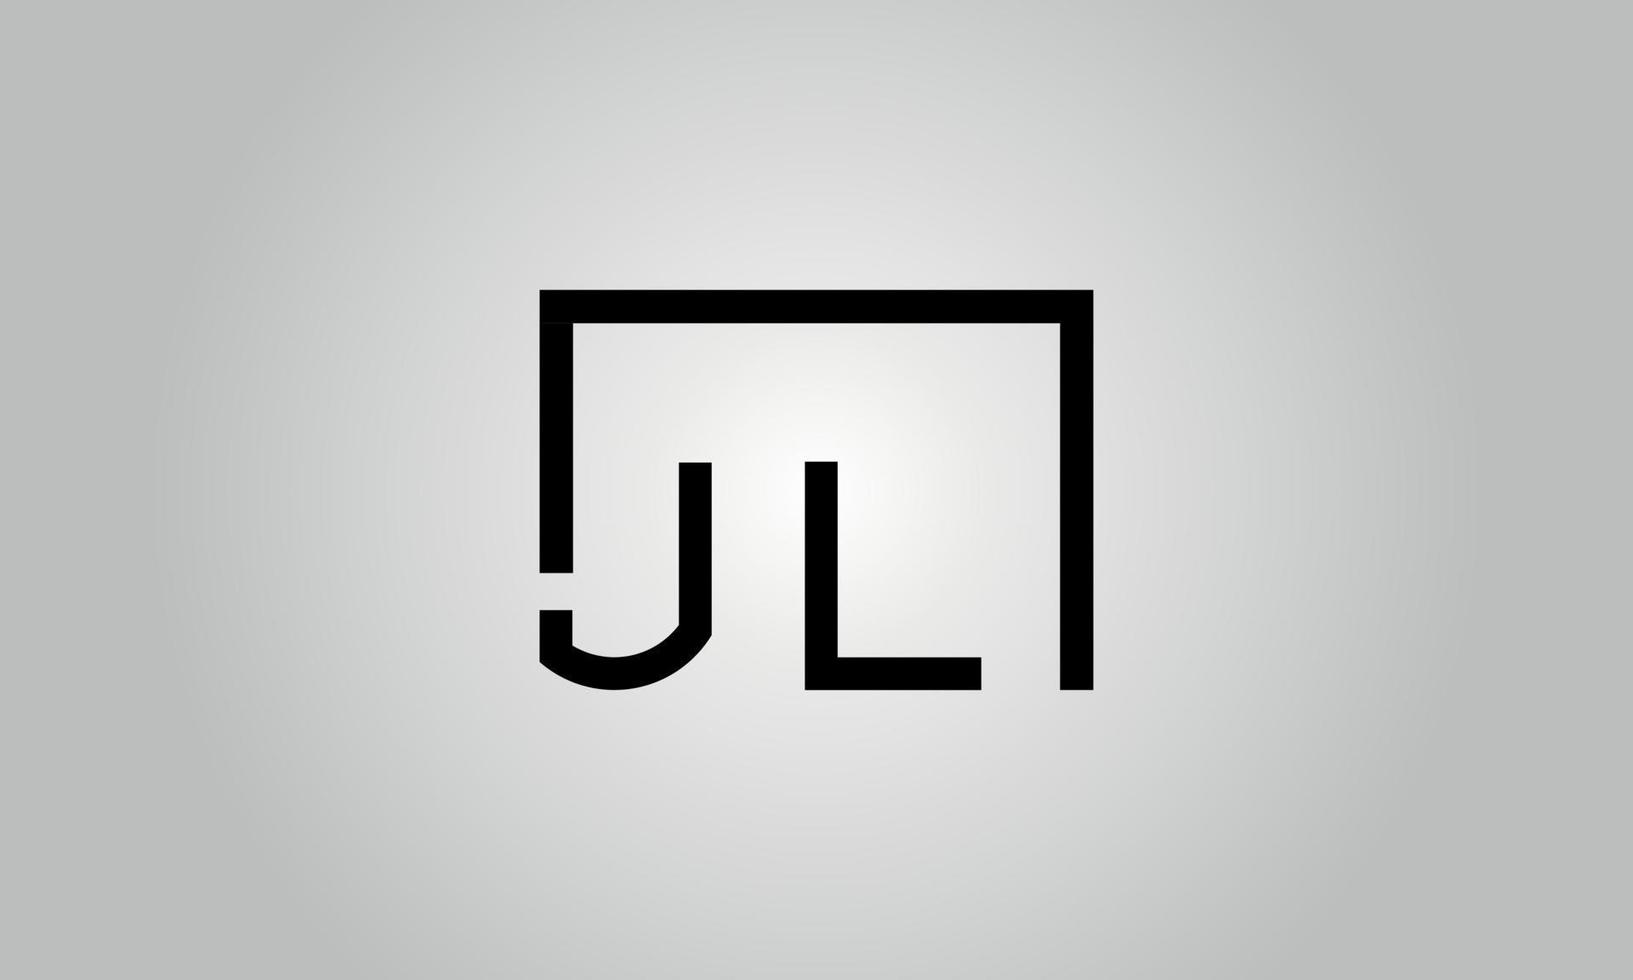 brief jl logo ontwerp. jl logo met plein vorm in zwart kleuren vector vrij vector sjabloon.